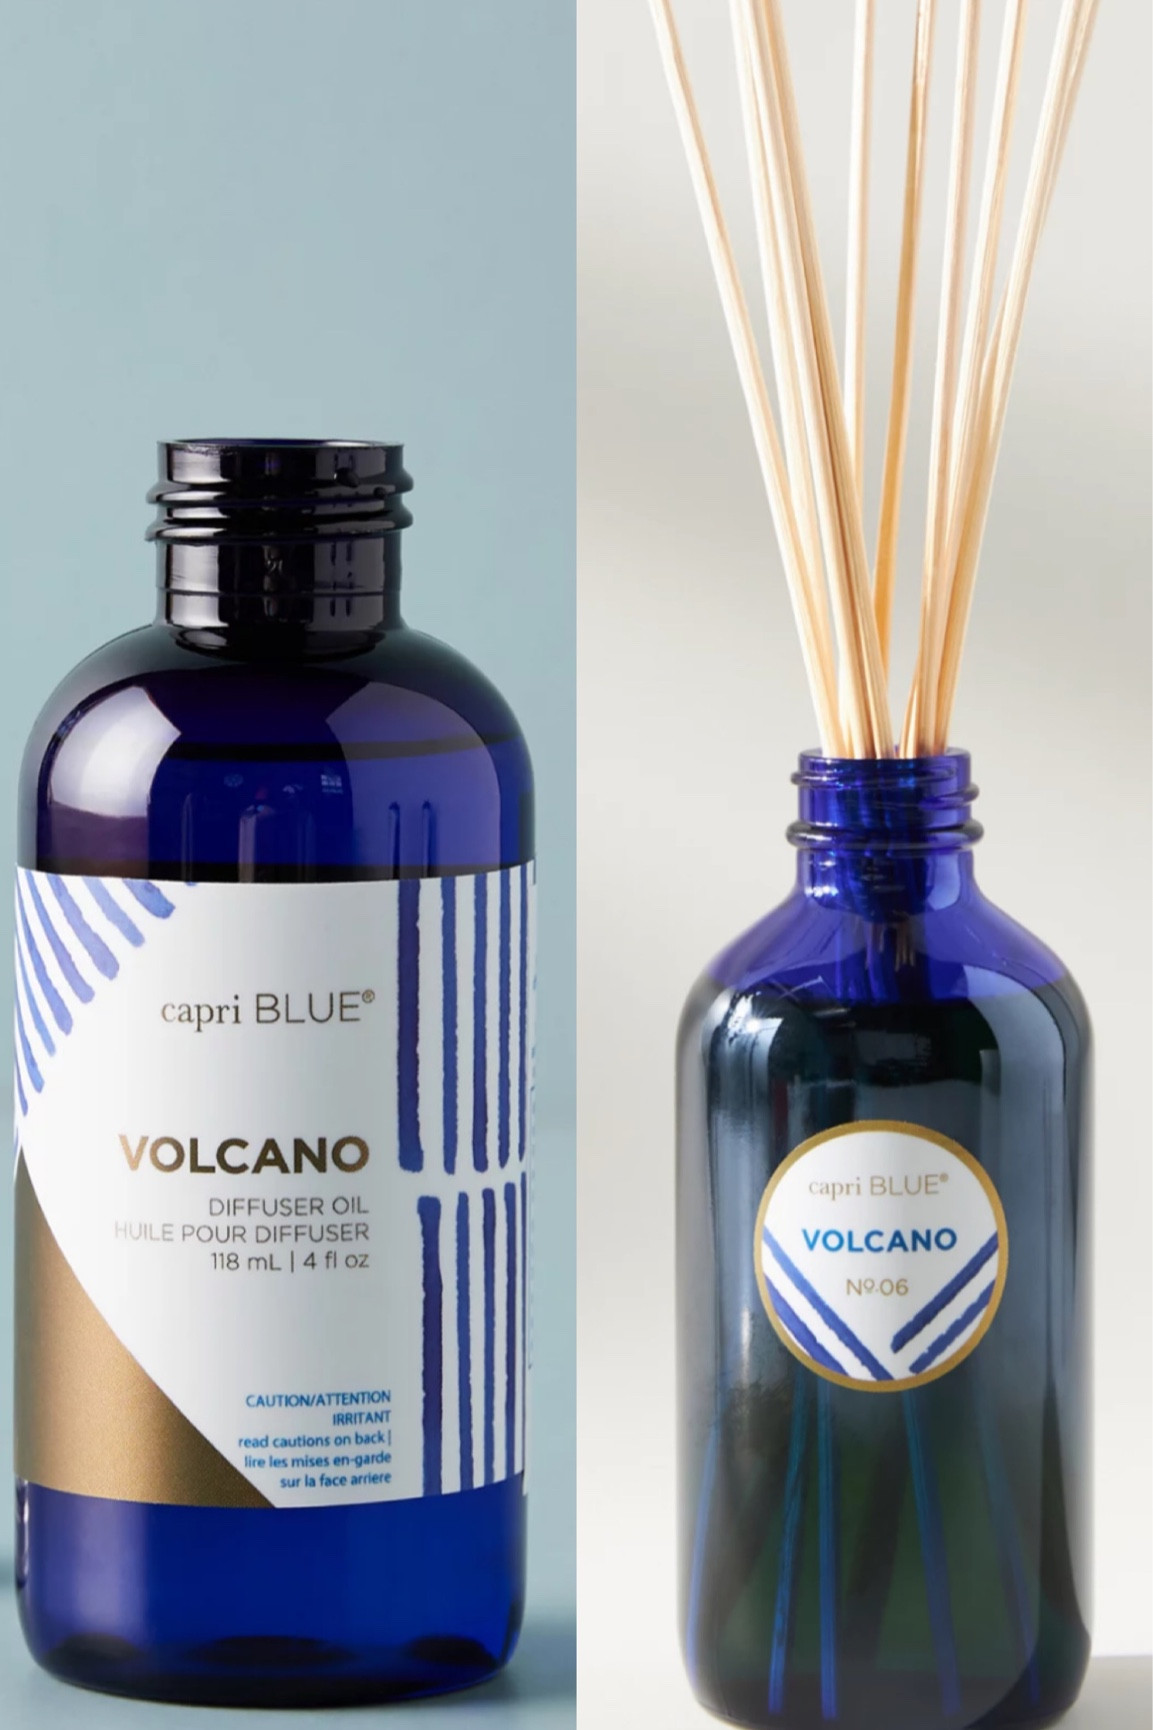 Capri Blue Volcano Reed Diffuser Oil